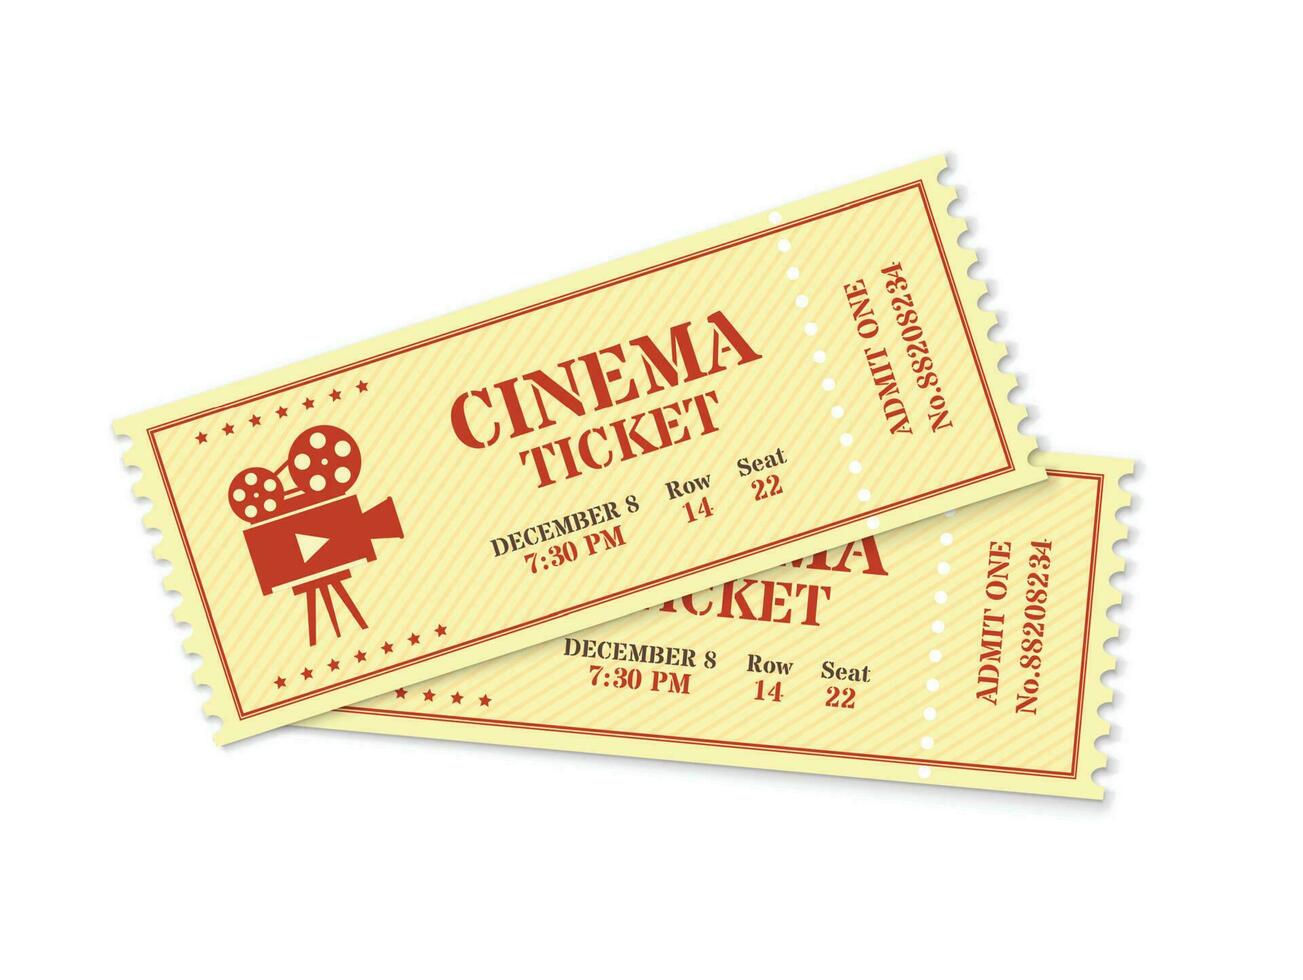 två bio biljetter, realistisk film biljett mockup. gammal årgång bio visa ingång passera, filma festival antagning kupong vektor mall